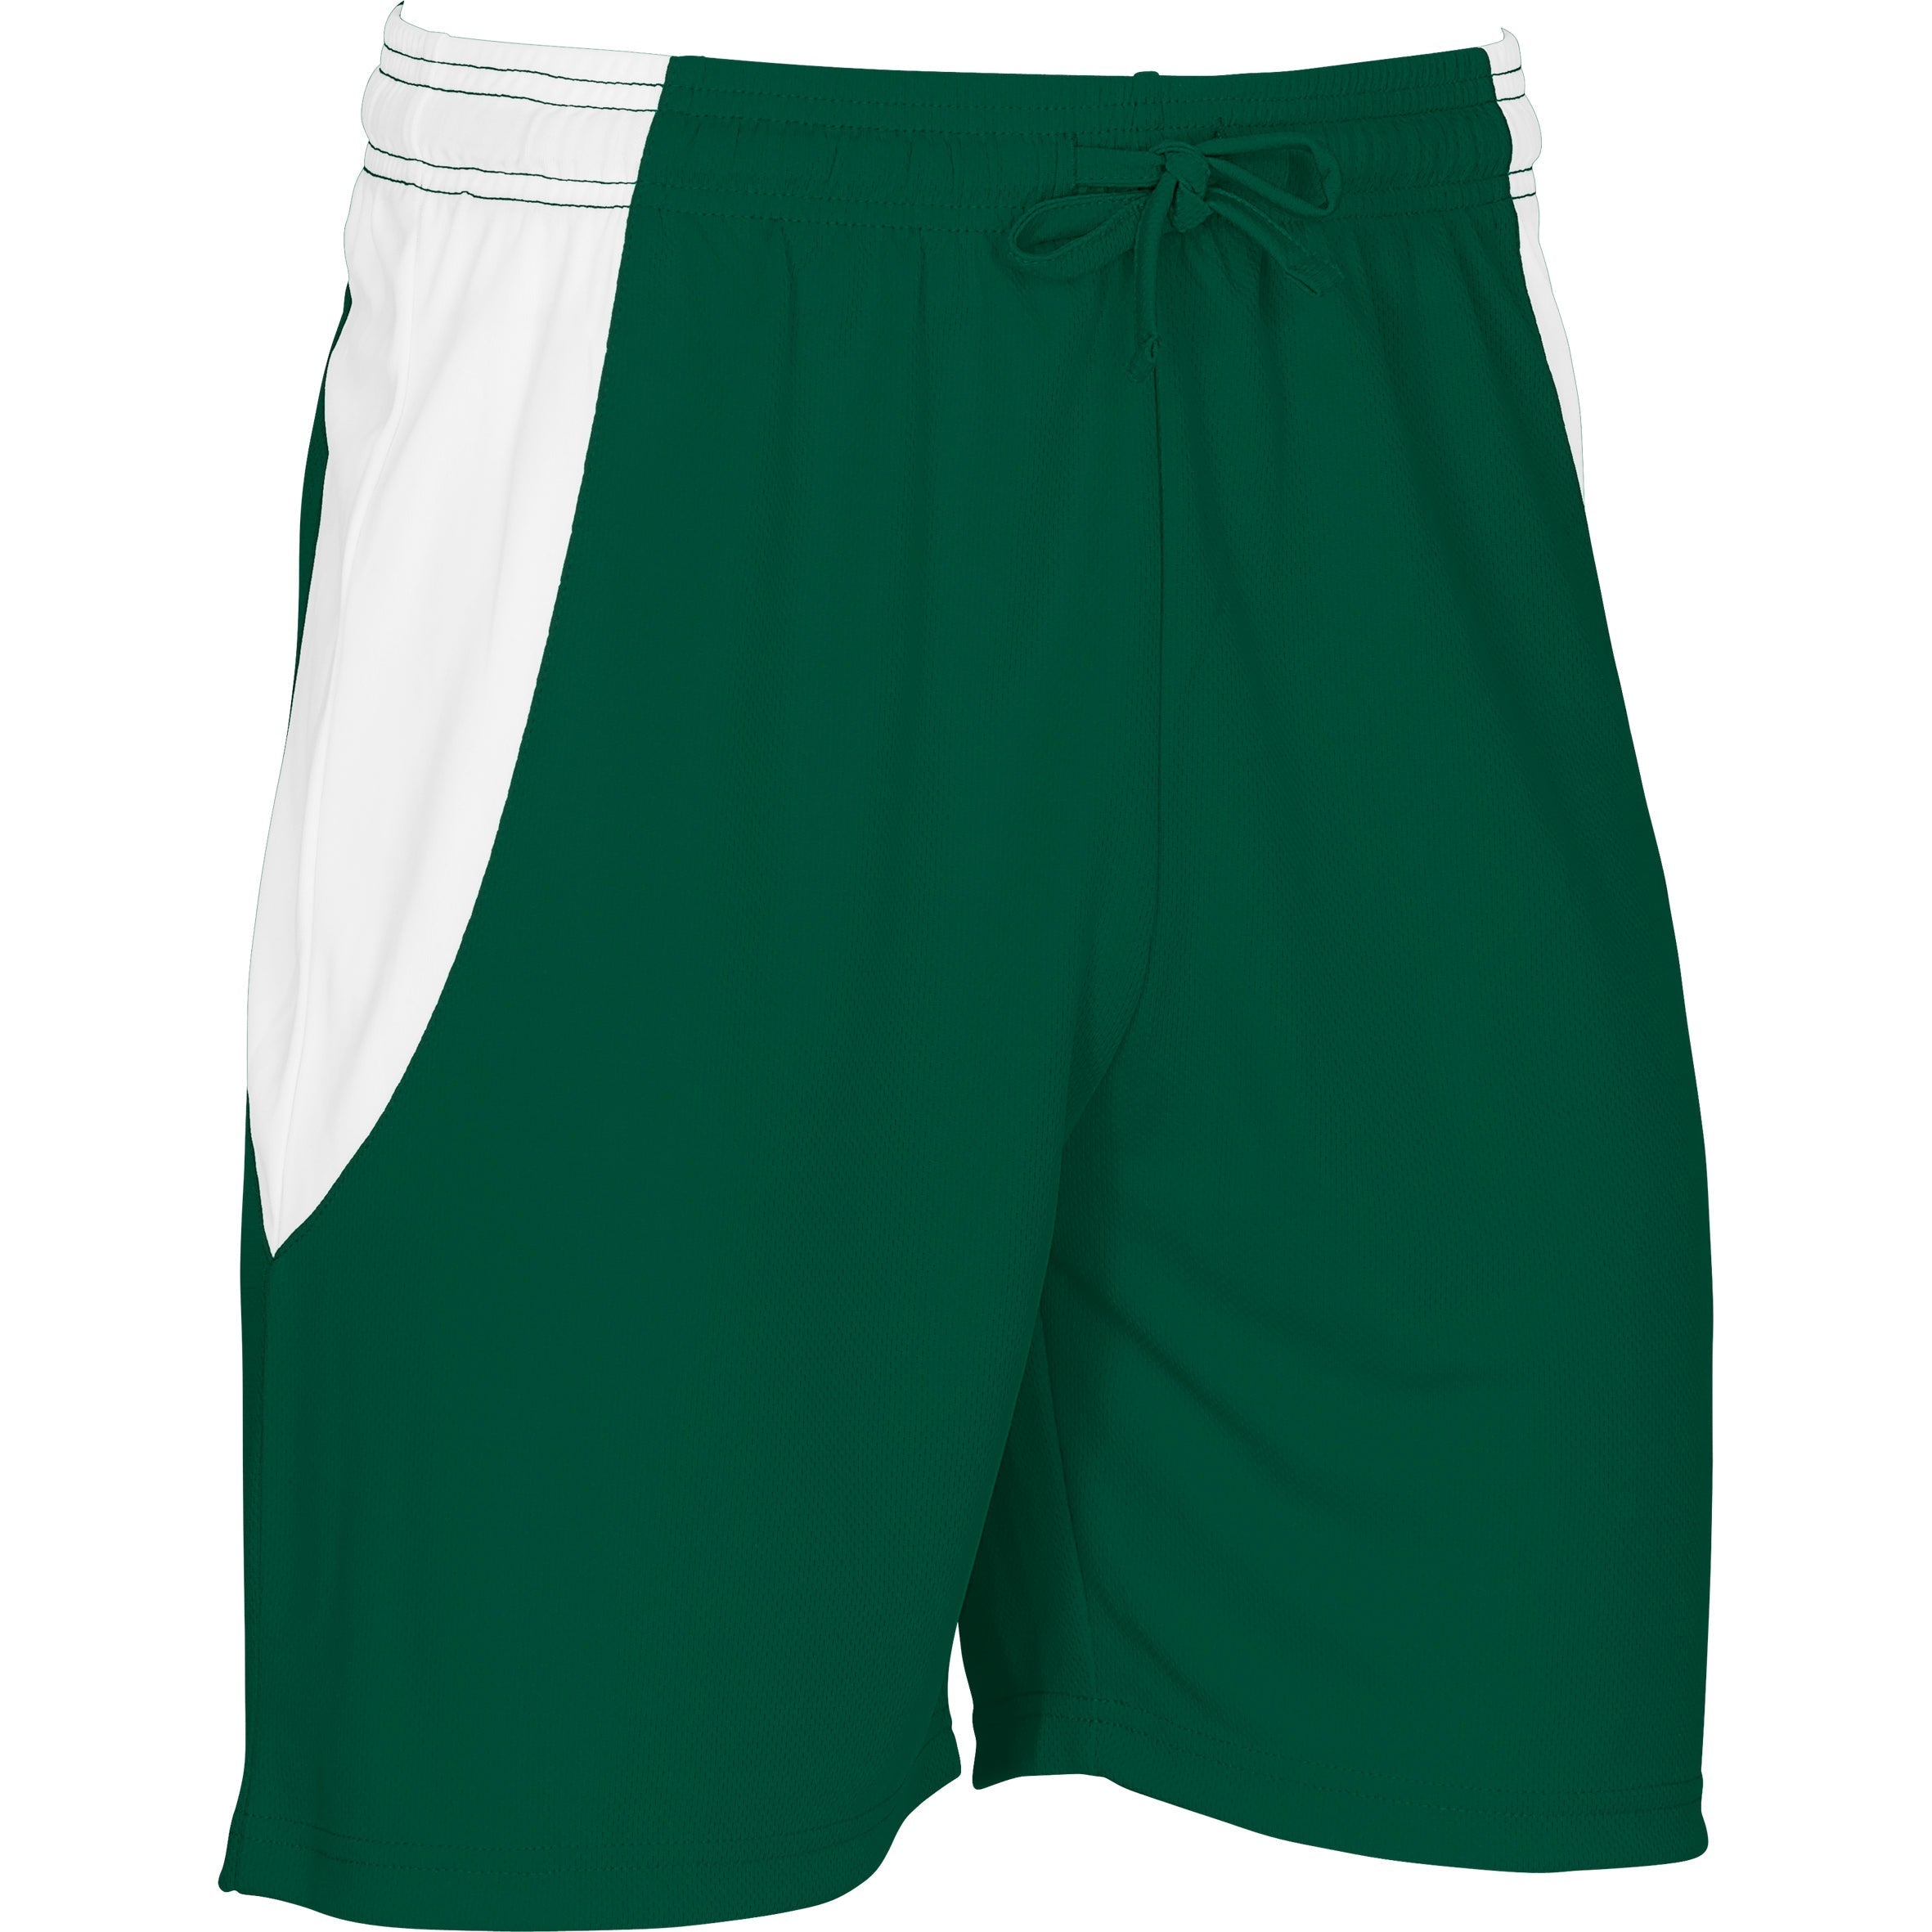 Unisex Championship Shorts - White L / Dark Green / DG1